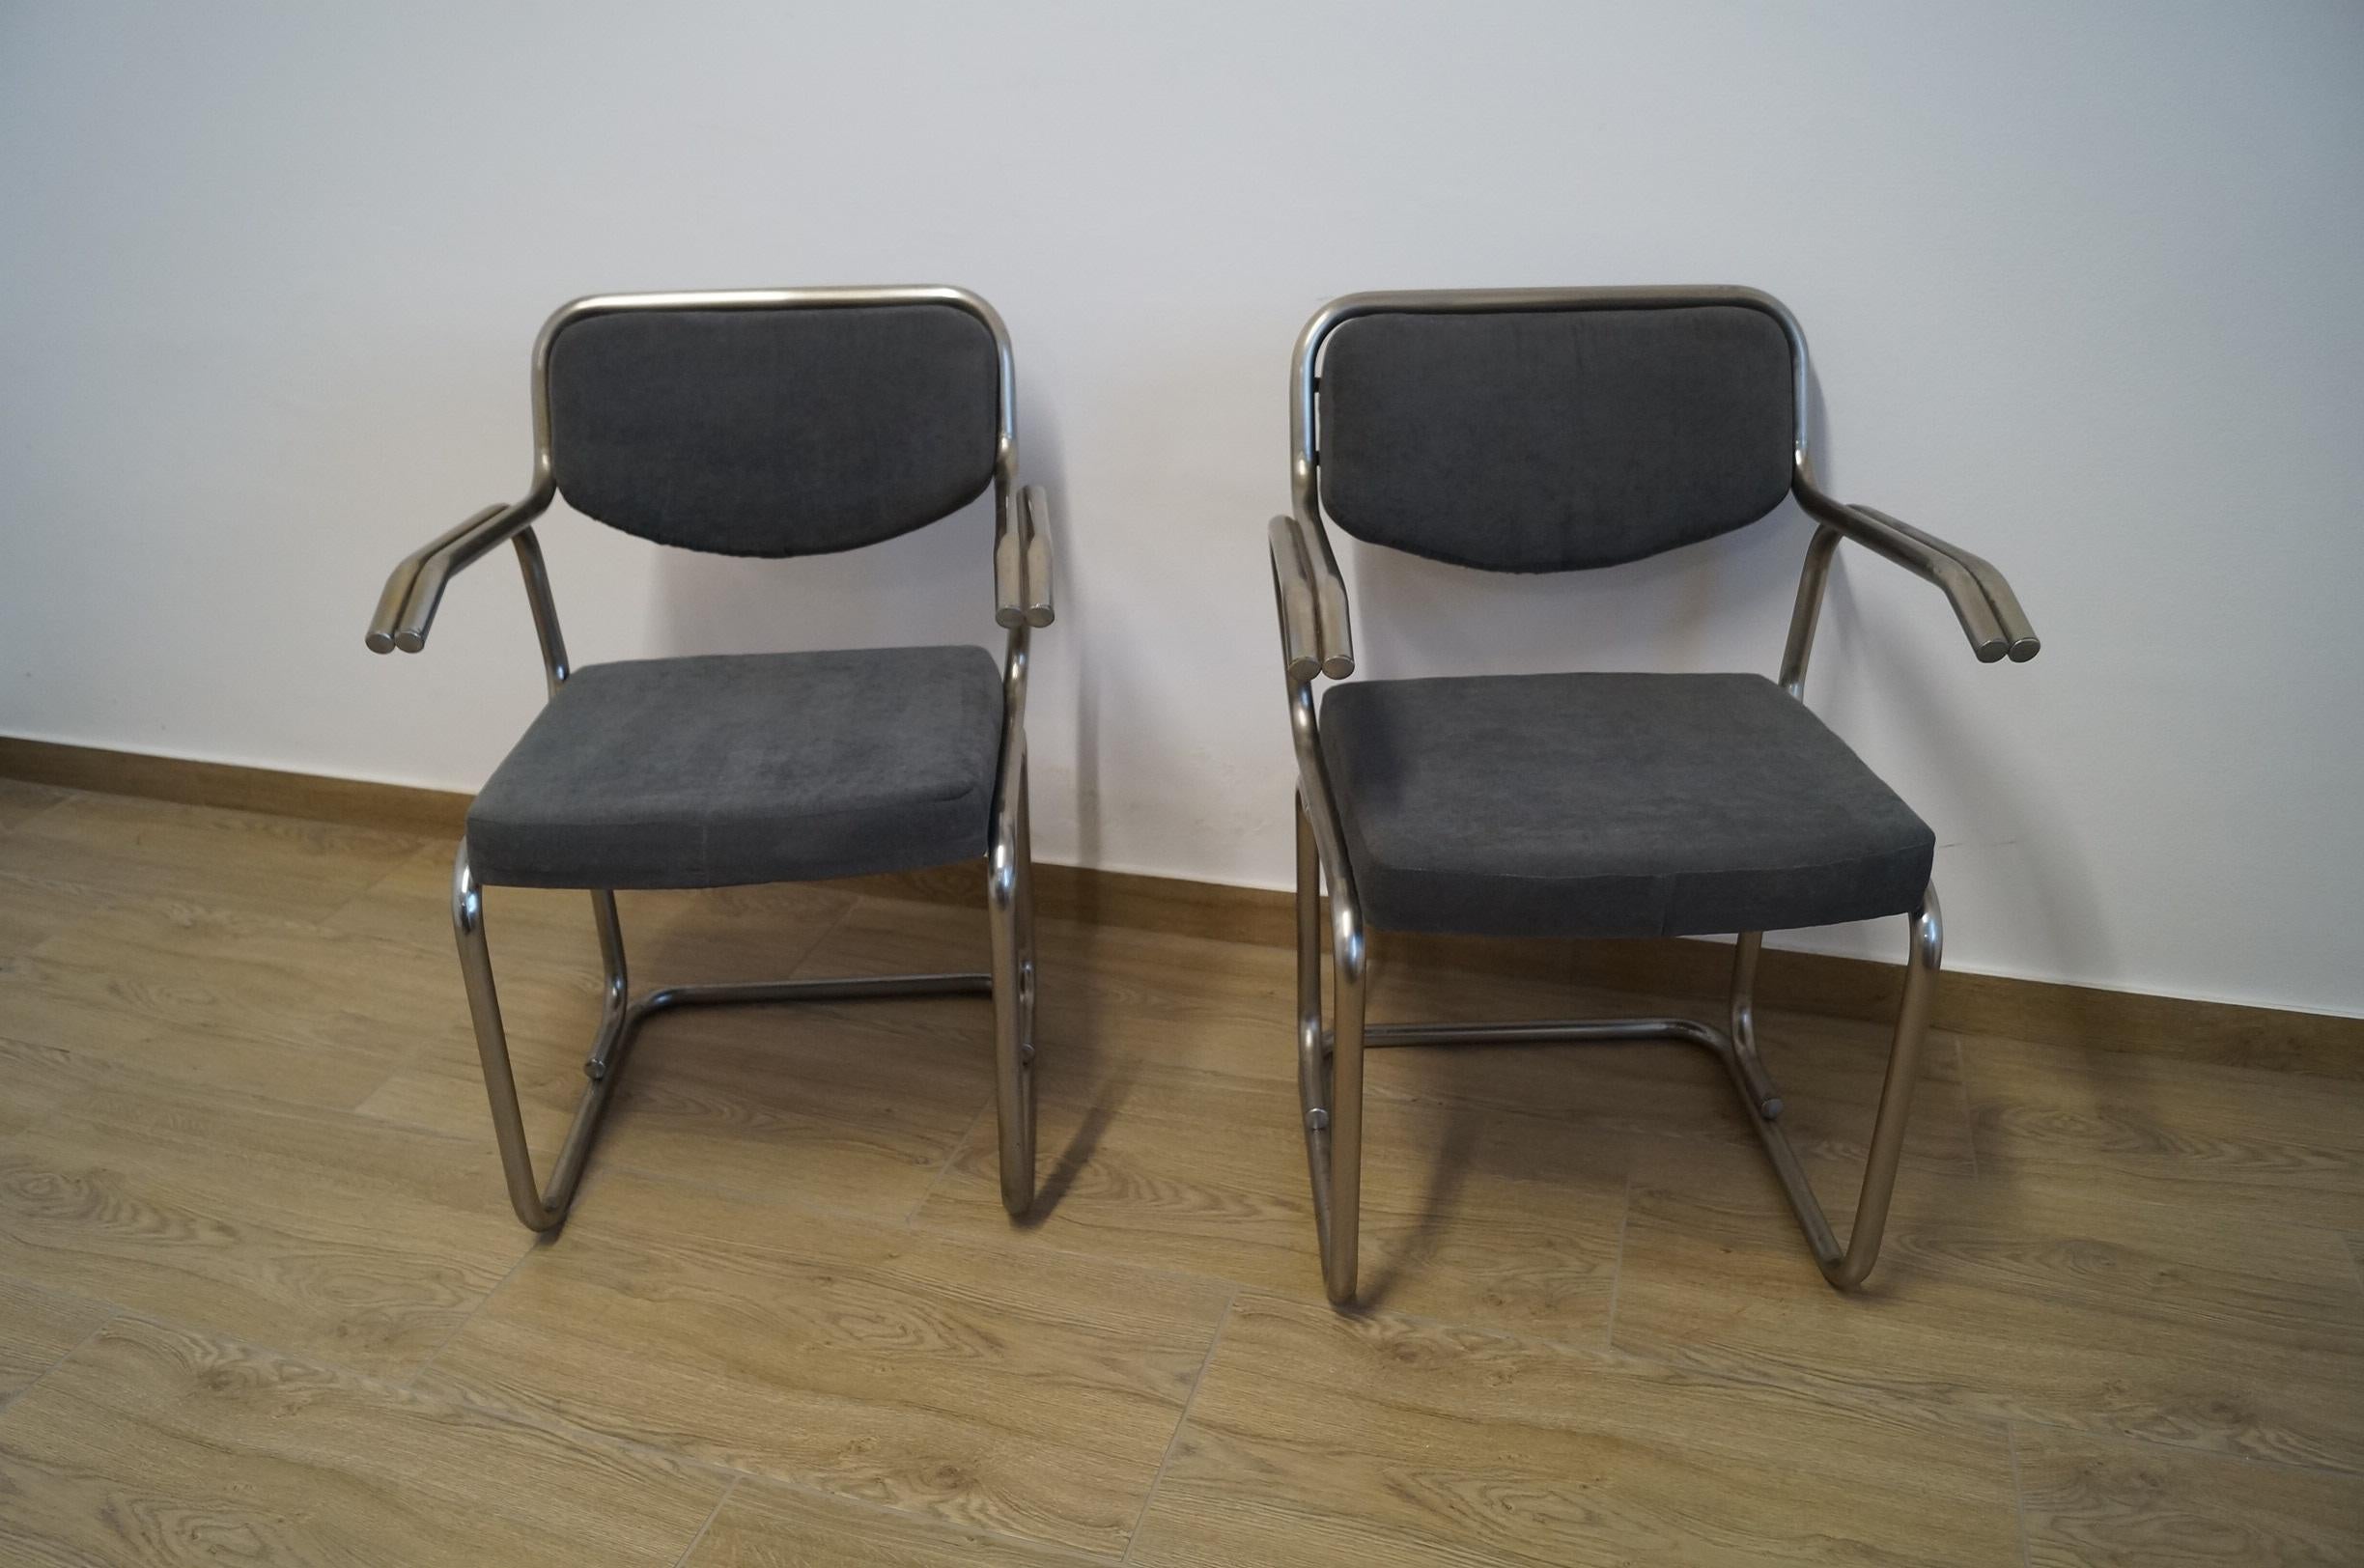 Deux fauteuils Art Déco de 1960 République Tchèque.


Chaque meuble qui sort de notre atelier, du début à la fin, est soumis à une rénovation manuelle, afin de lui rendre son état d'origine d'il y a de nombreuses années (il est nettoyé jusqu'au